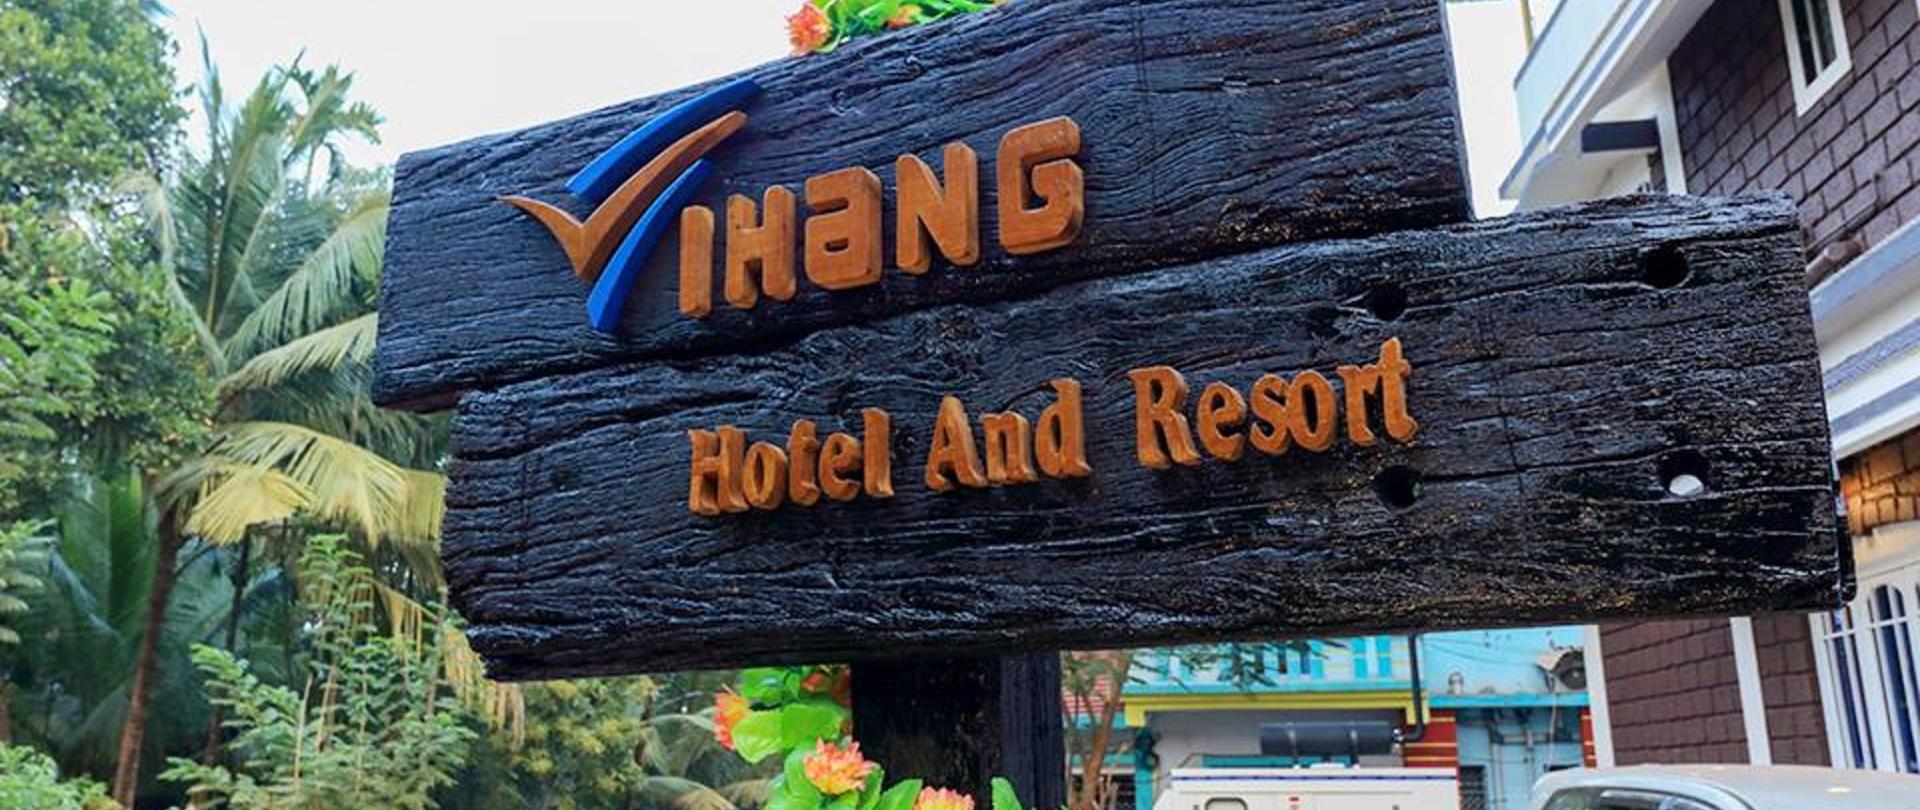 Vihang Hotel And Resort